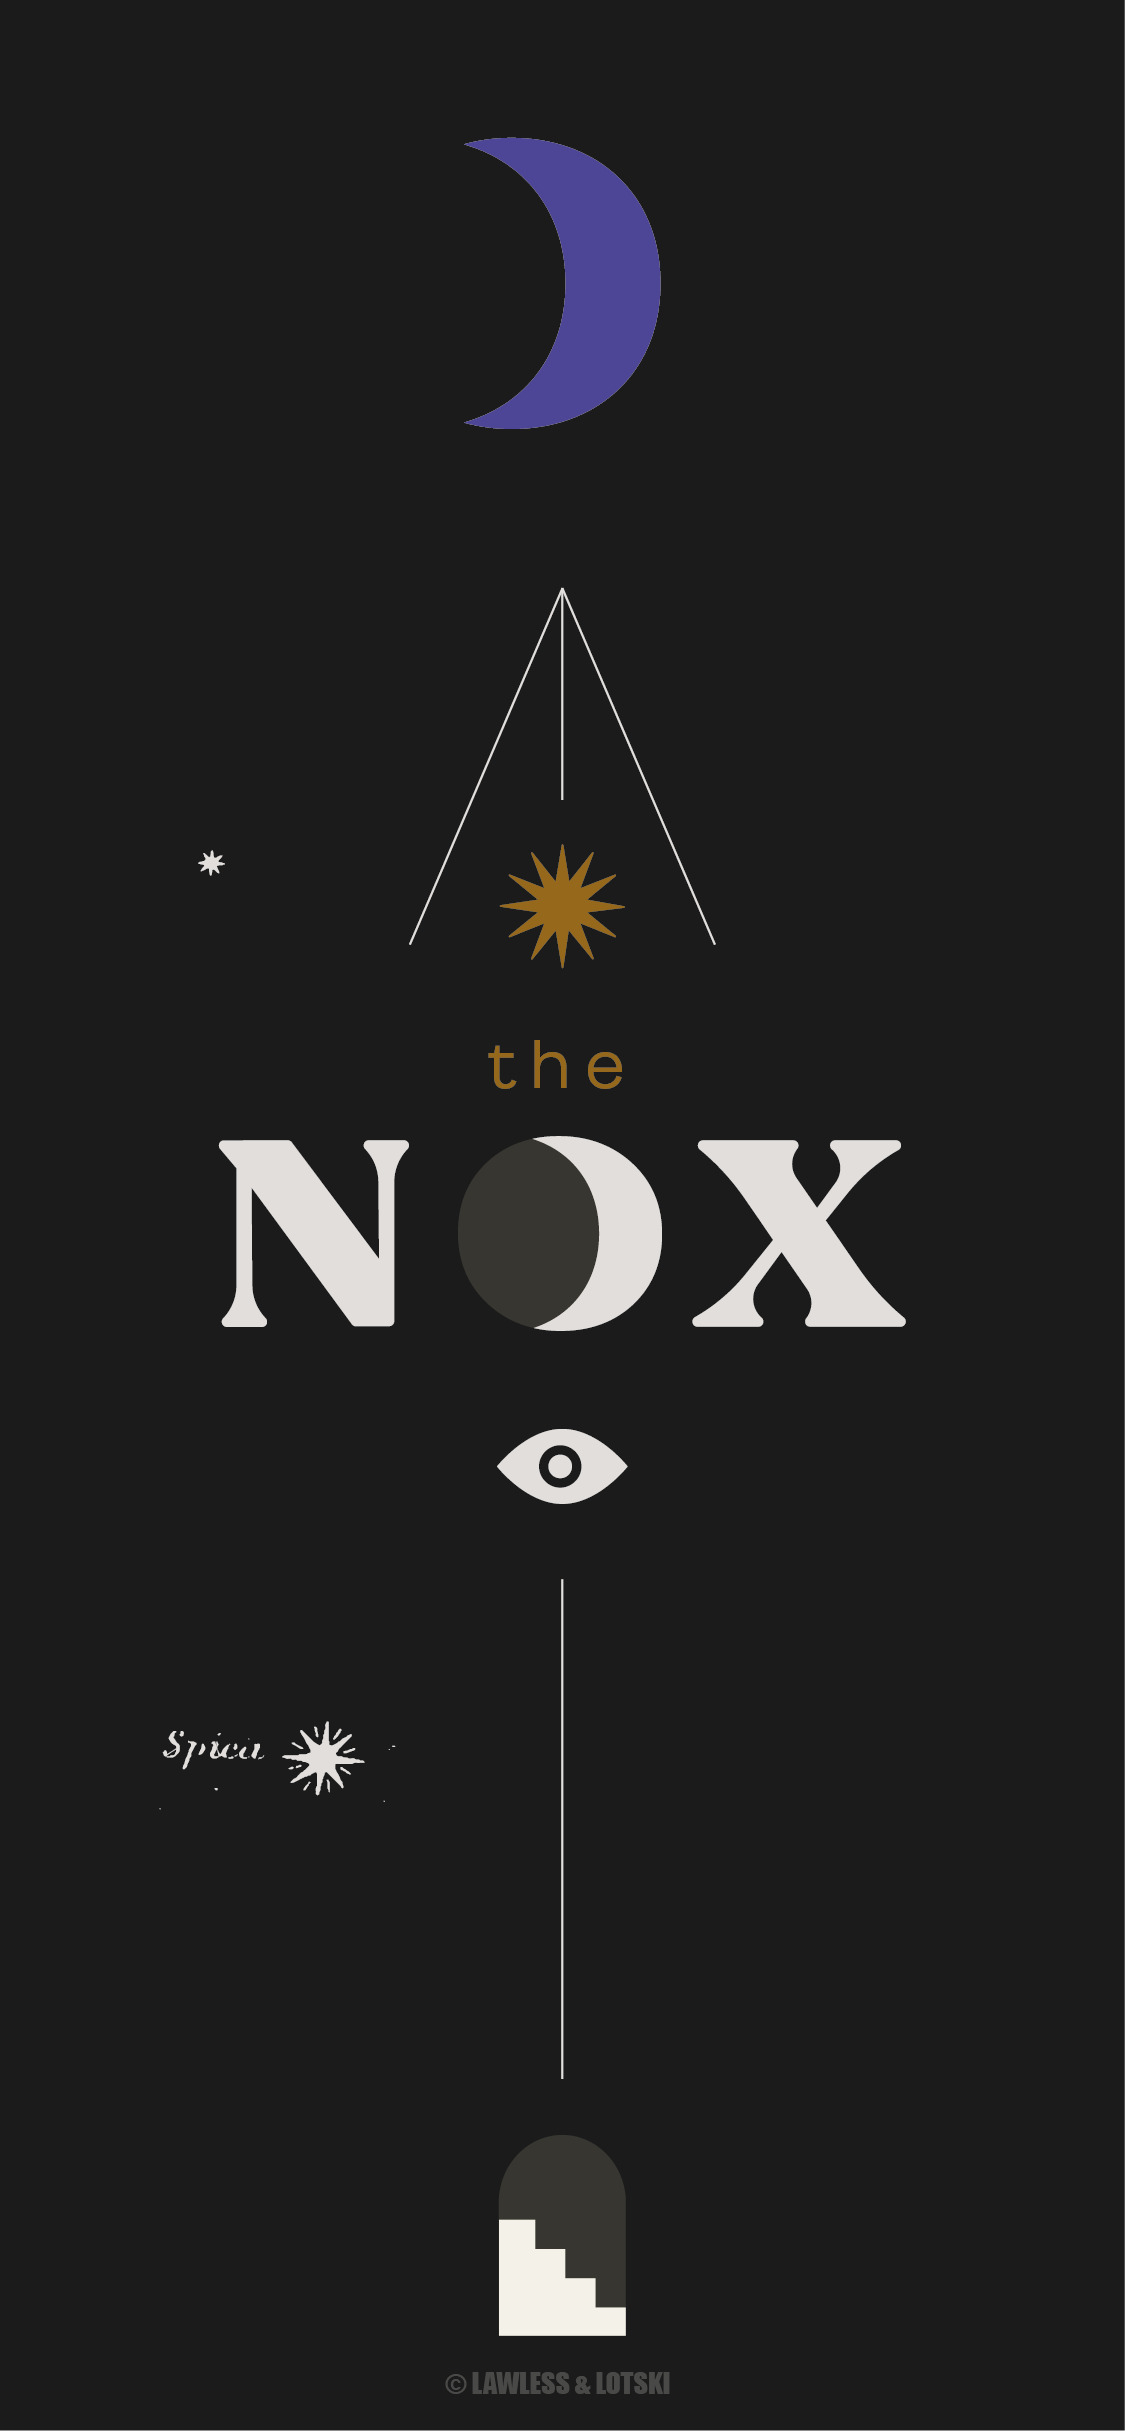 The Nox Hotel